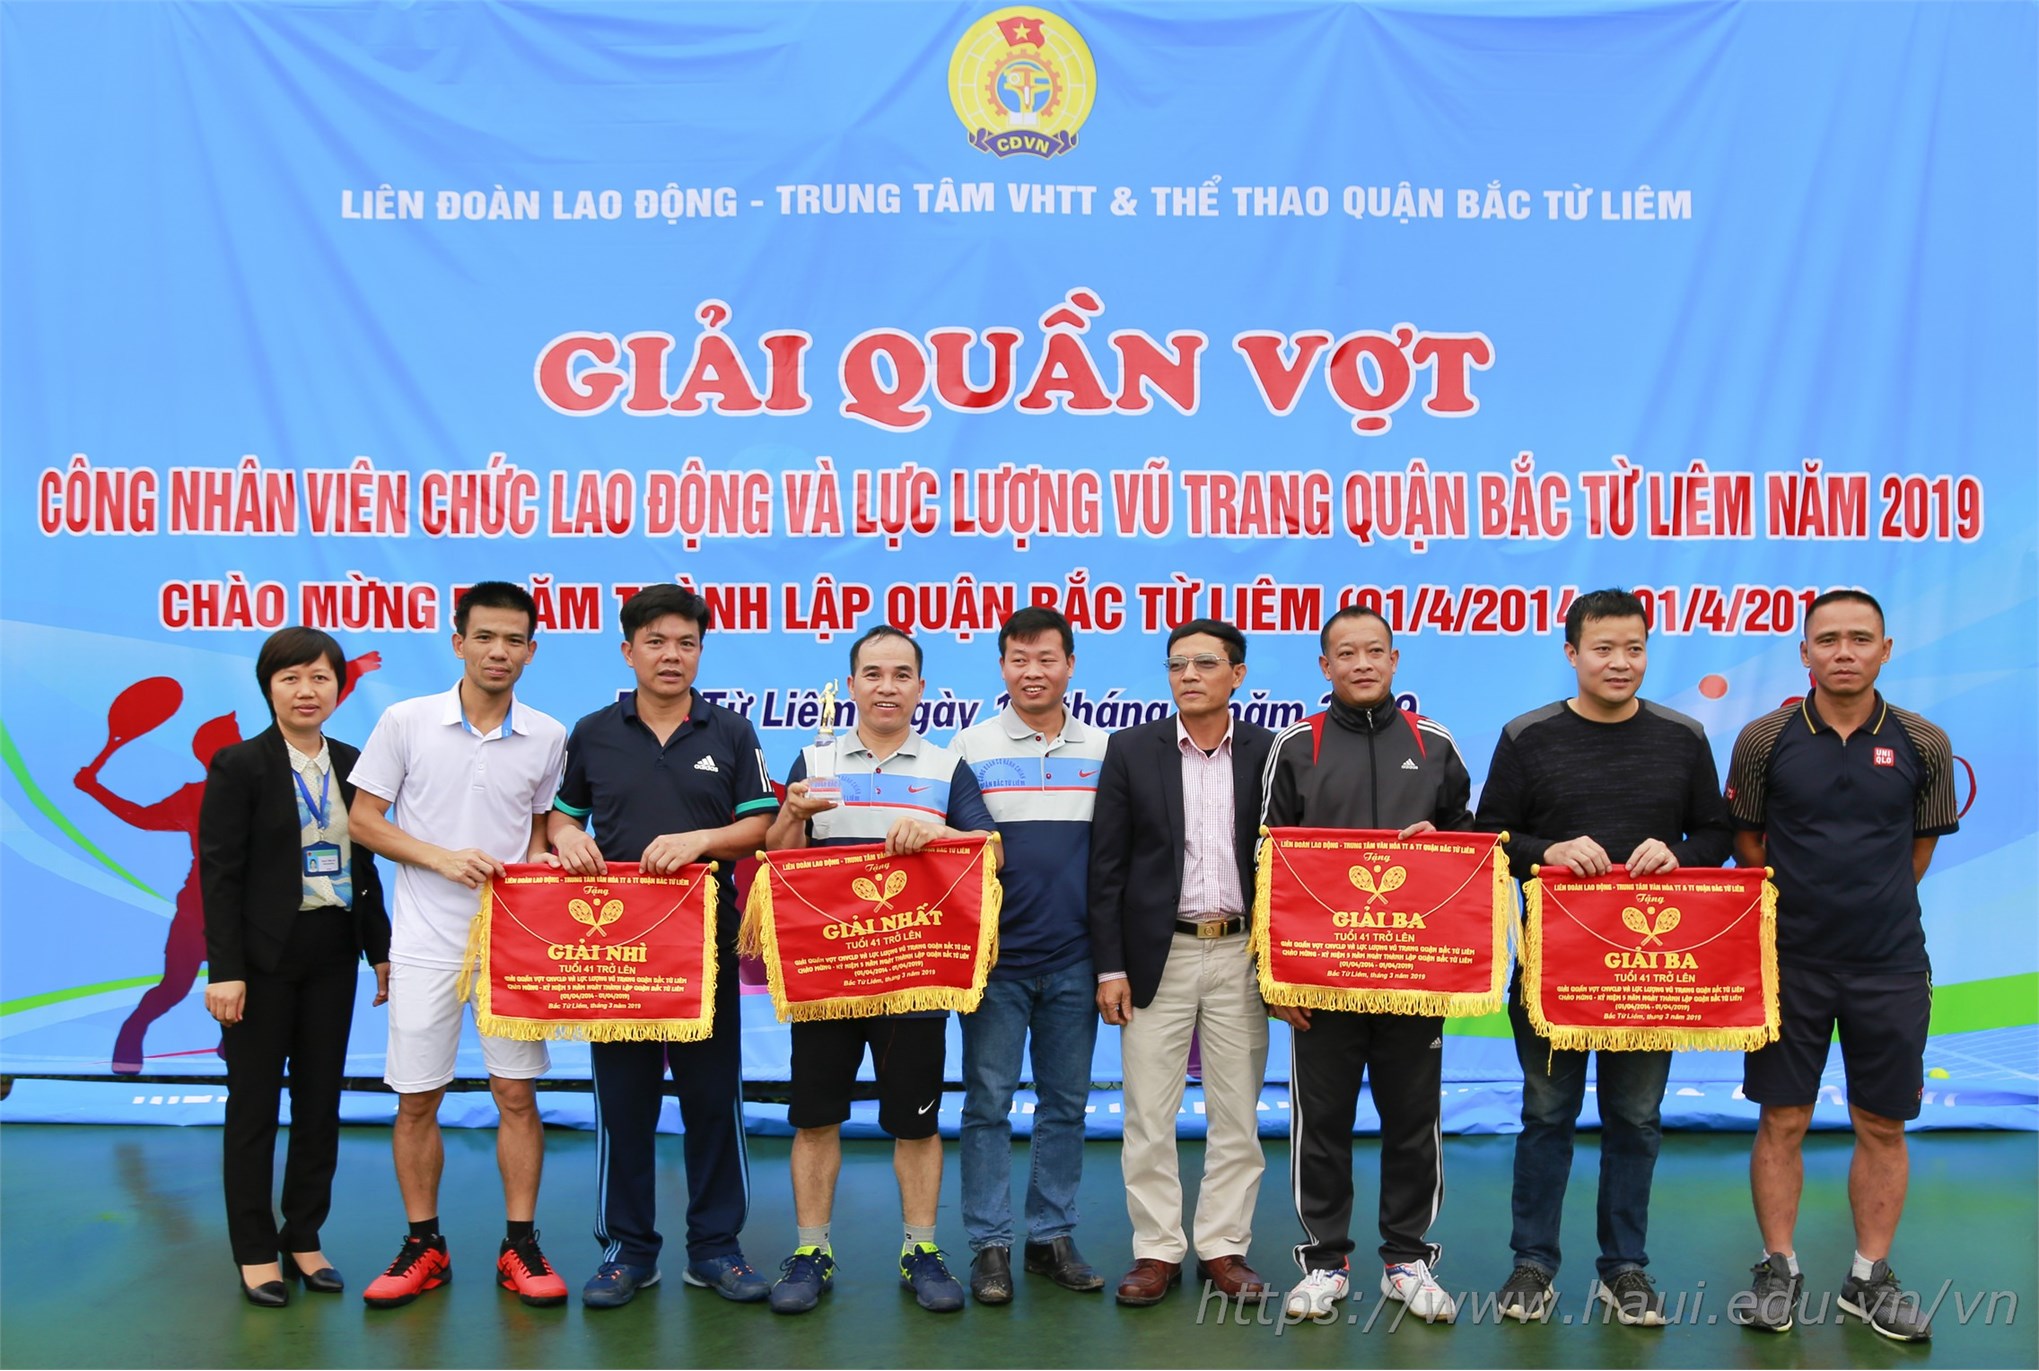 Giải quần vợt công nhân viên chức, người lao động và LLVT quận Bắc Từ Liêm năm 2019